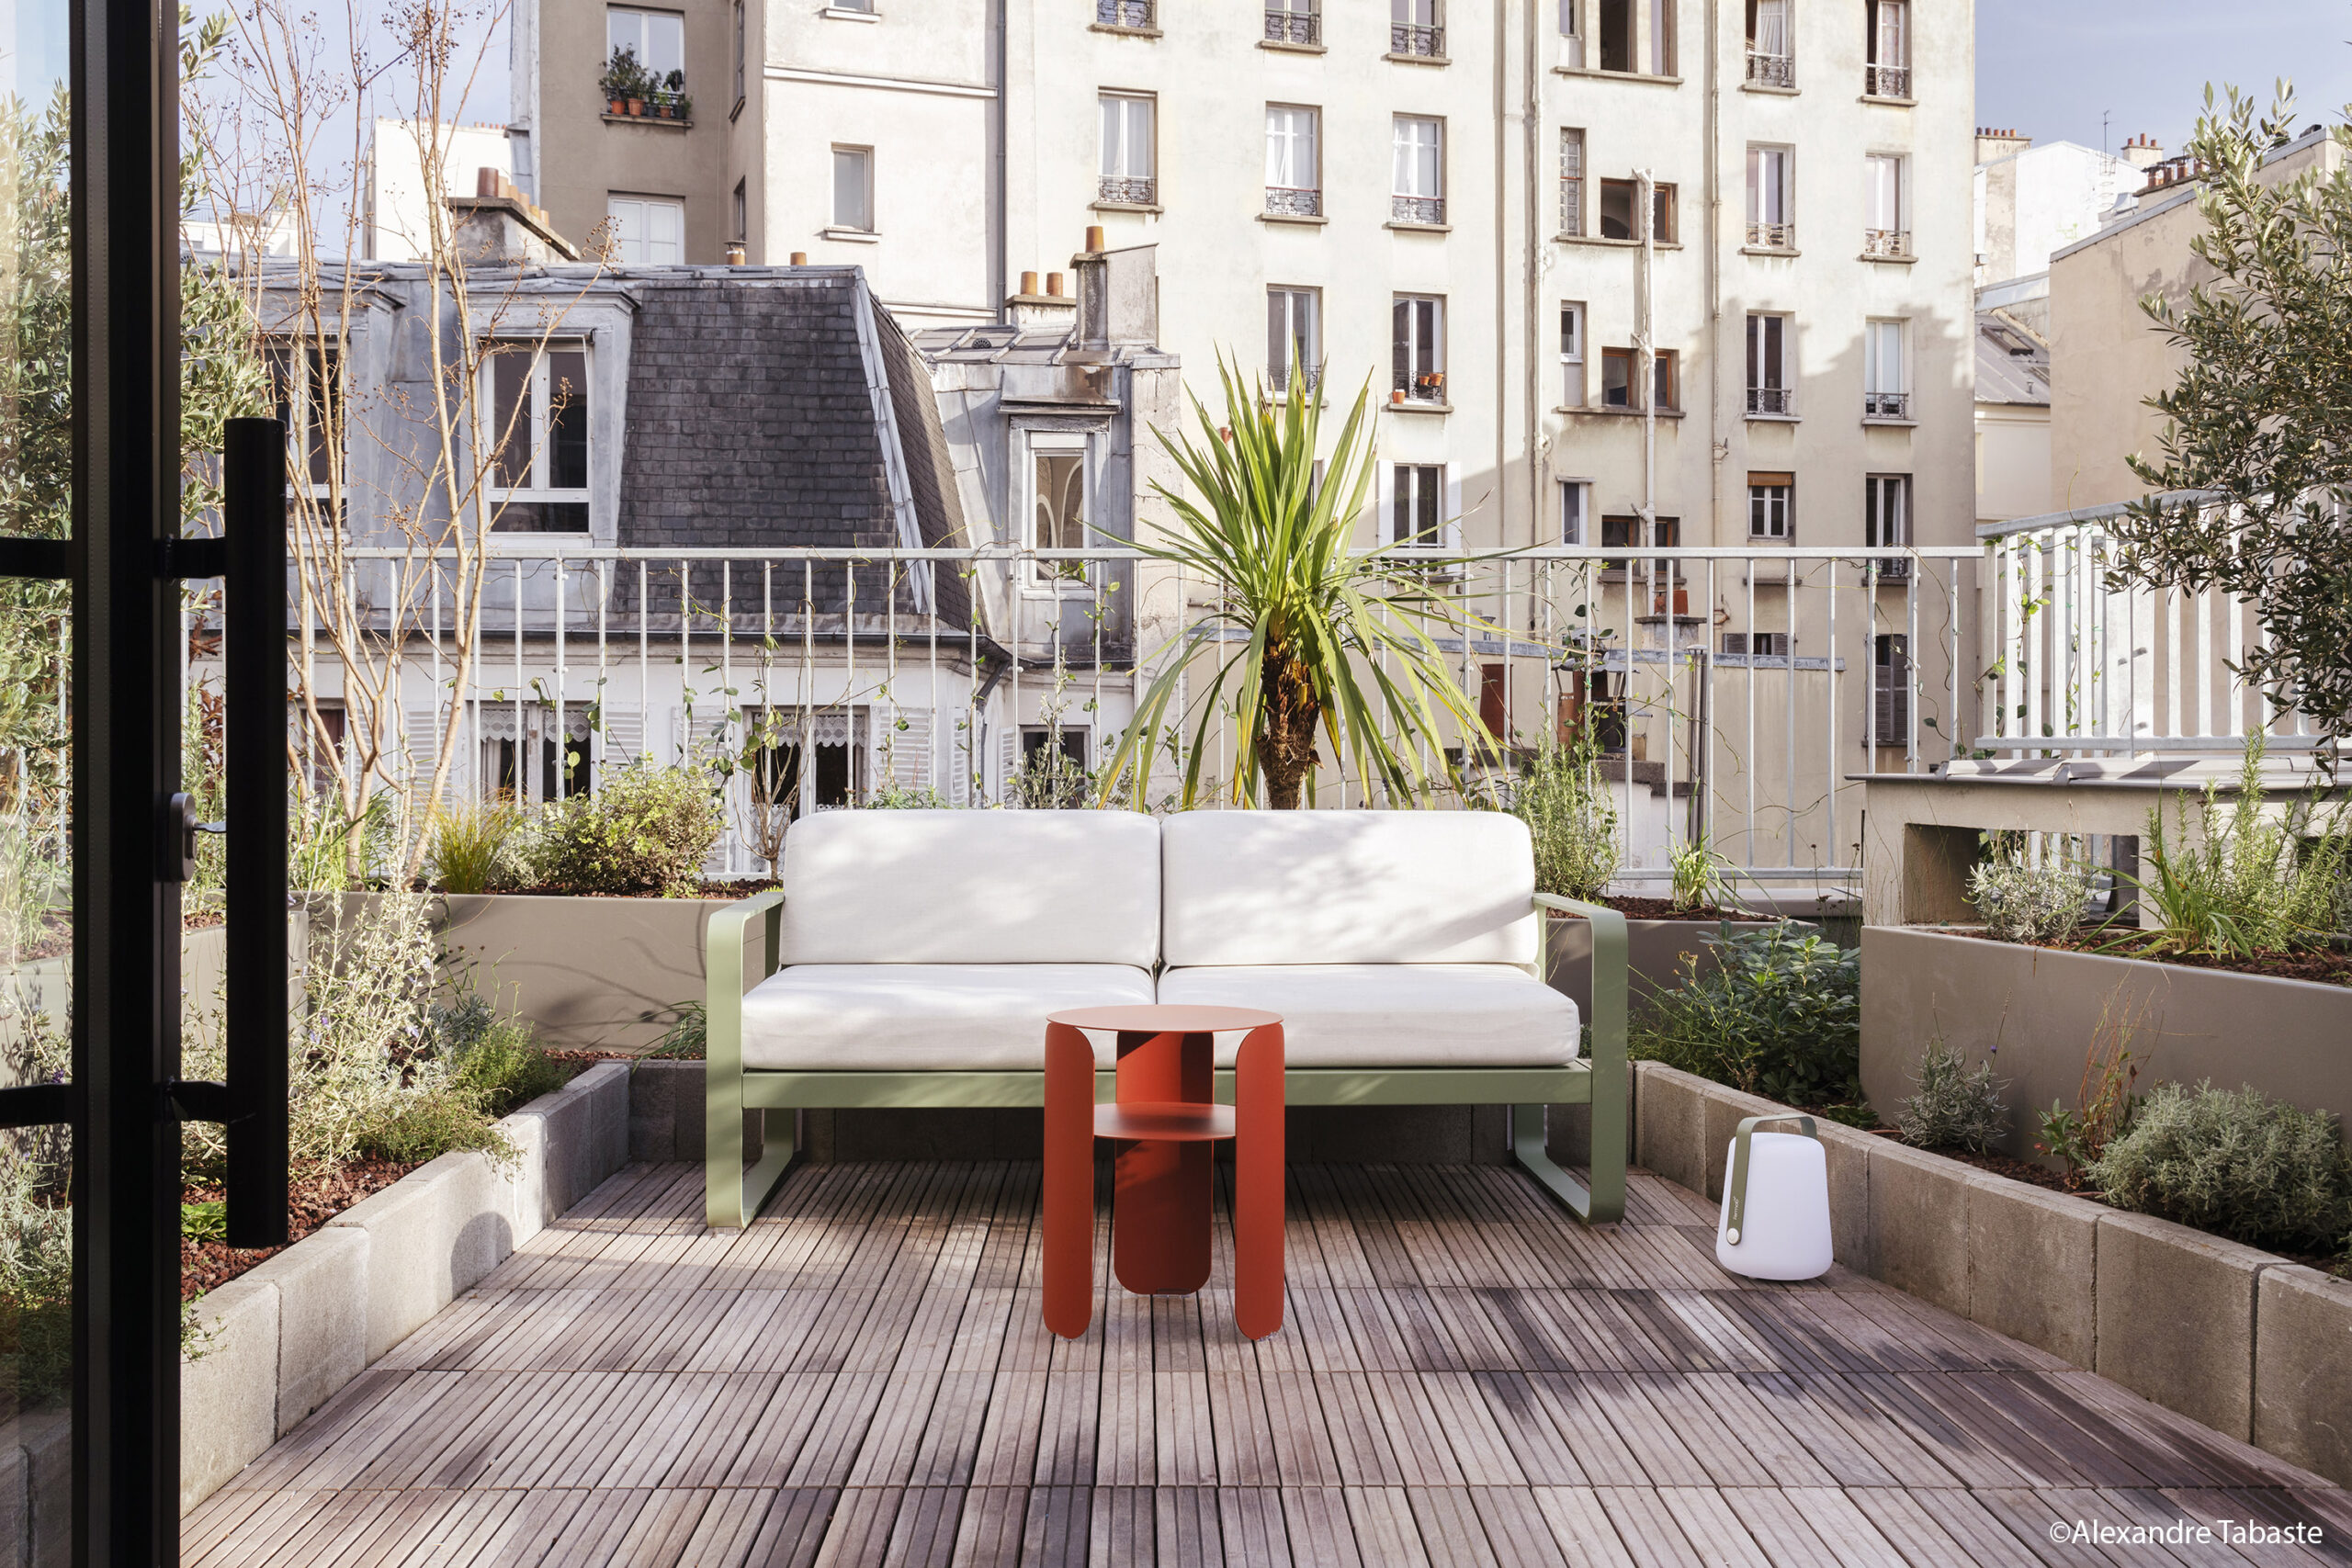 Réalisation référente : Eclisse équipe un loft « perché » sur les toits de Paris